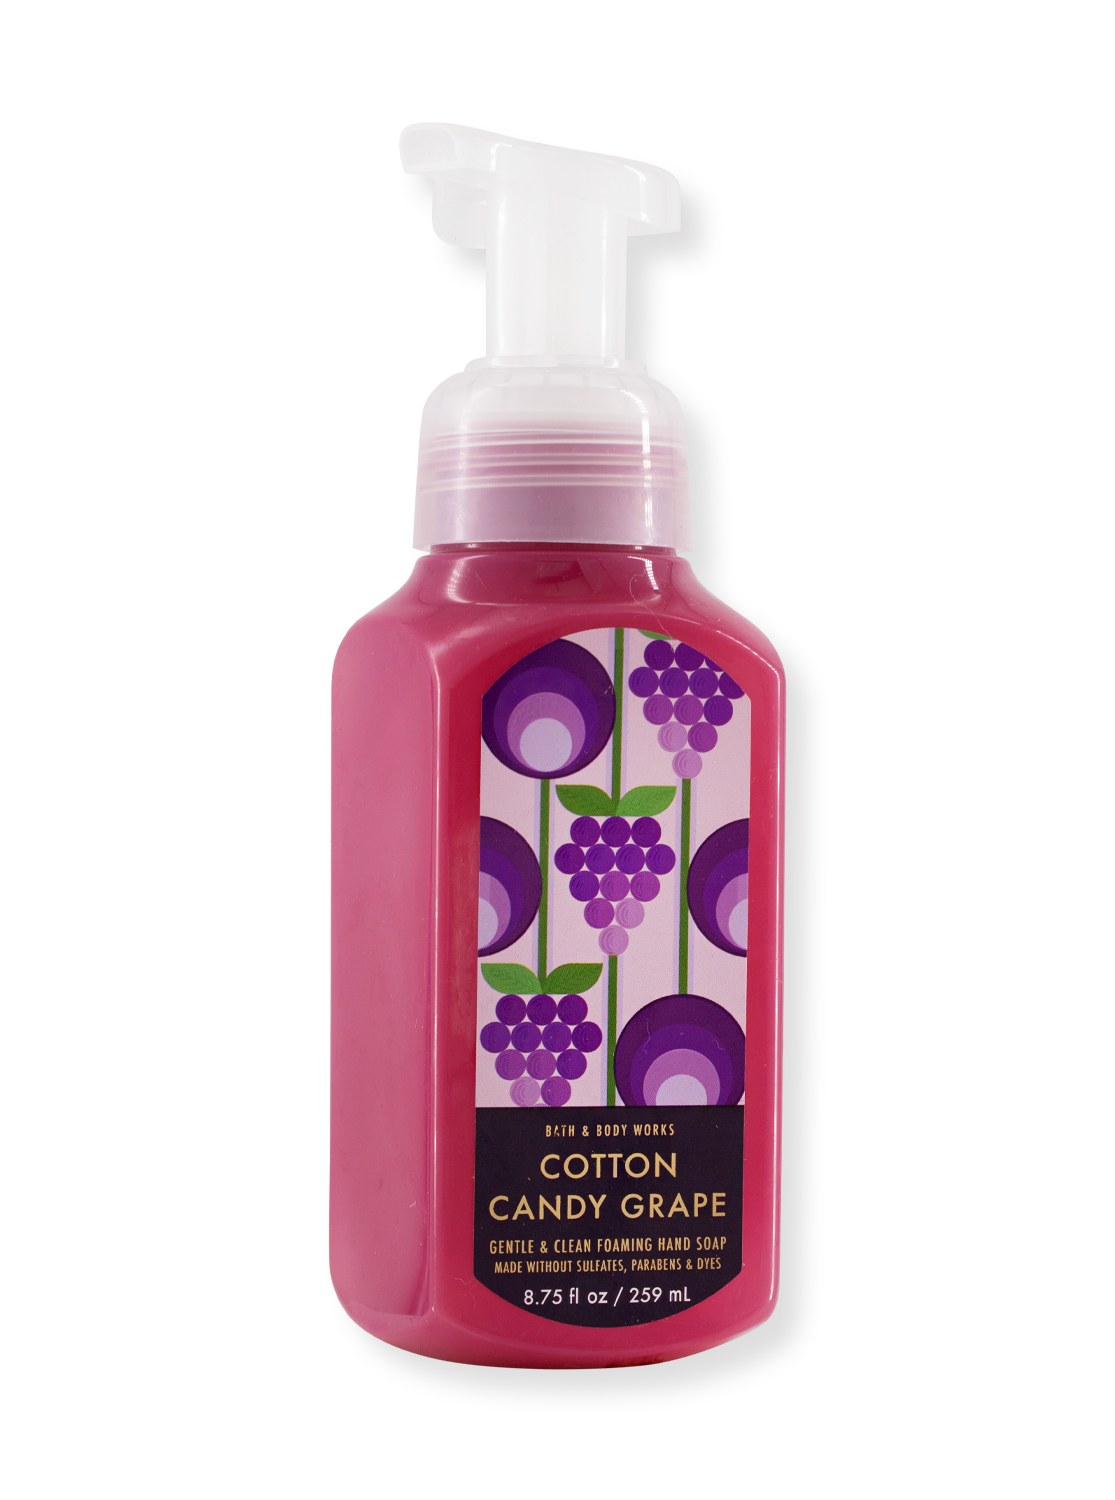 Schaumseife - Cotton Candy Grape - 259ml